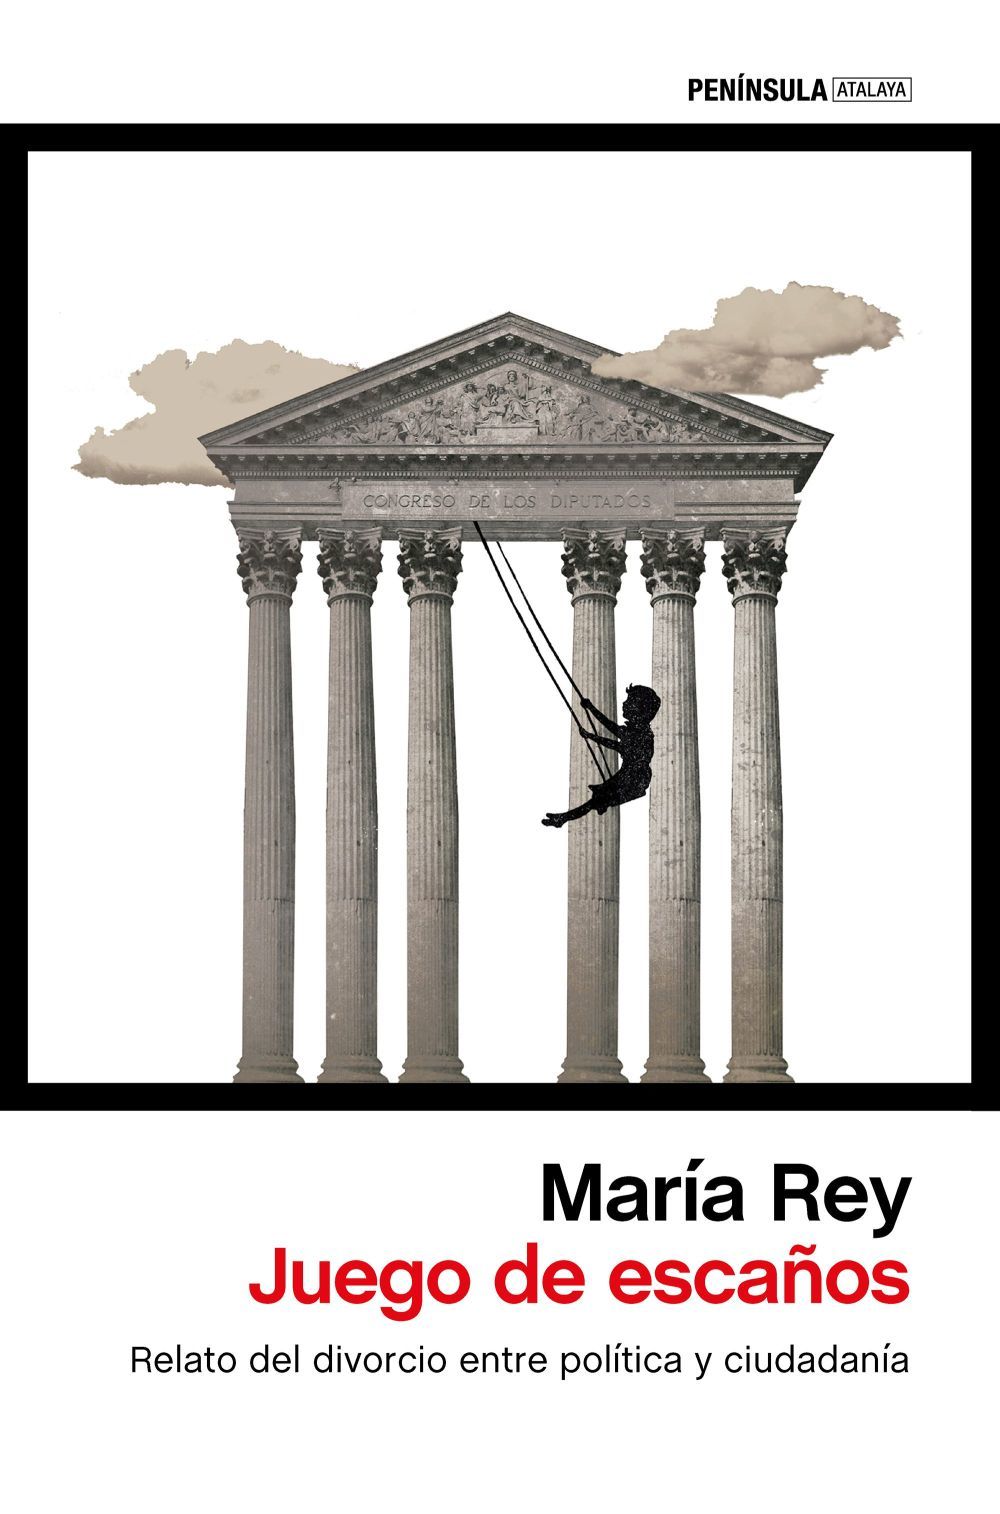 Mara Rey es cronista parlamentaria y, durante muchos aos, ha...